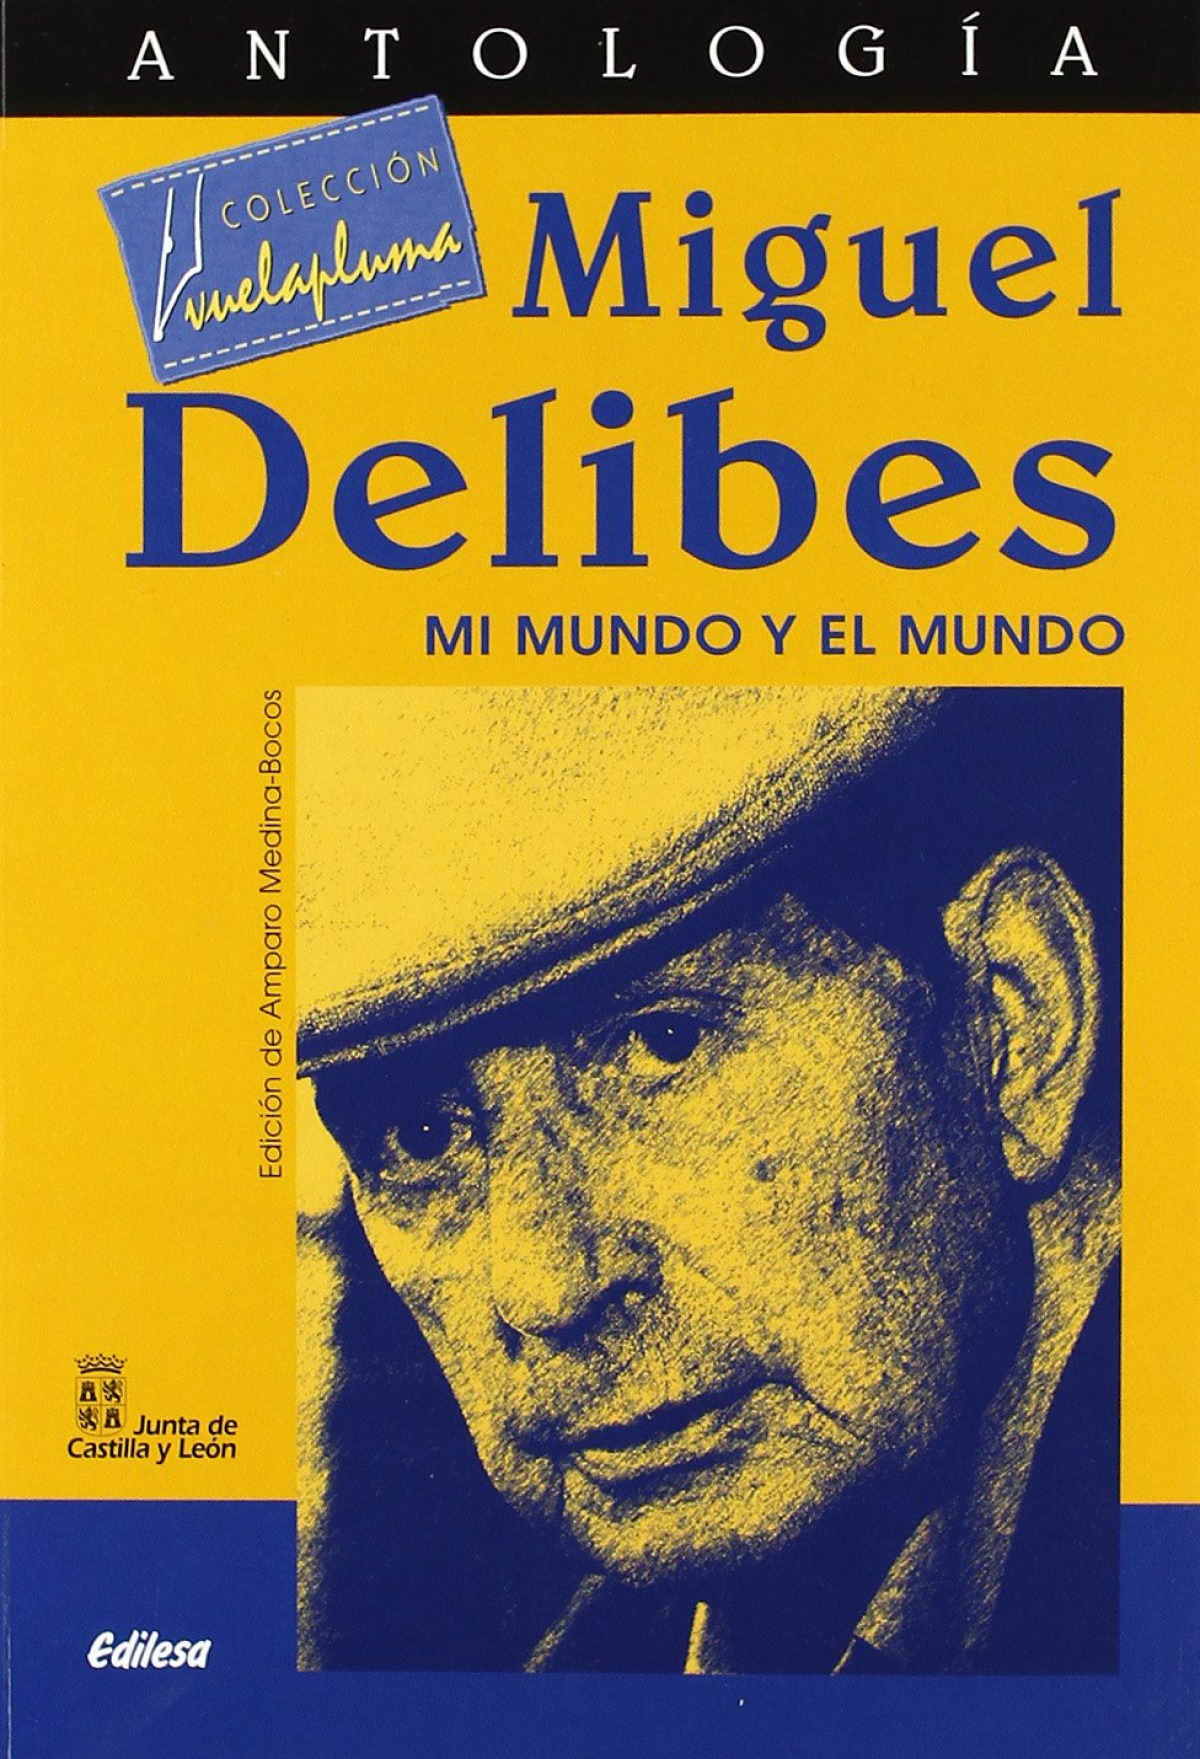 Antologia de miguel delibes - Delibes, Miguel